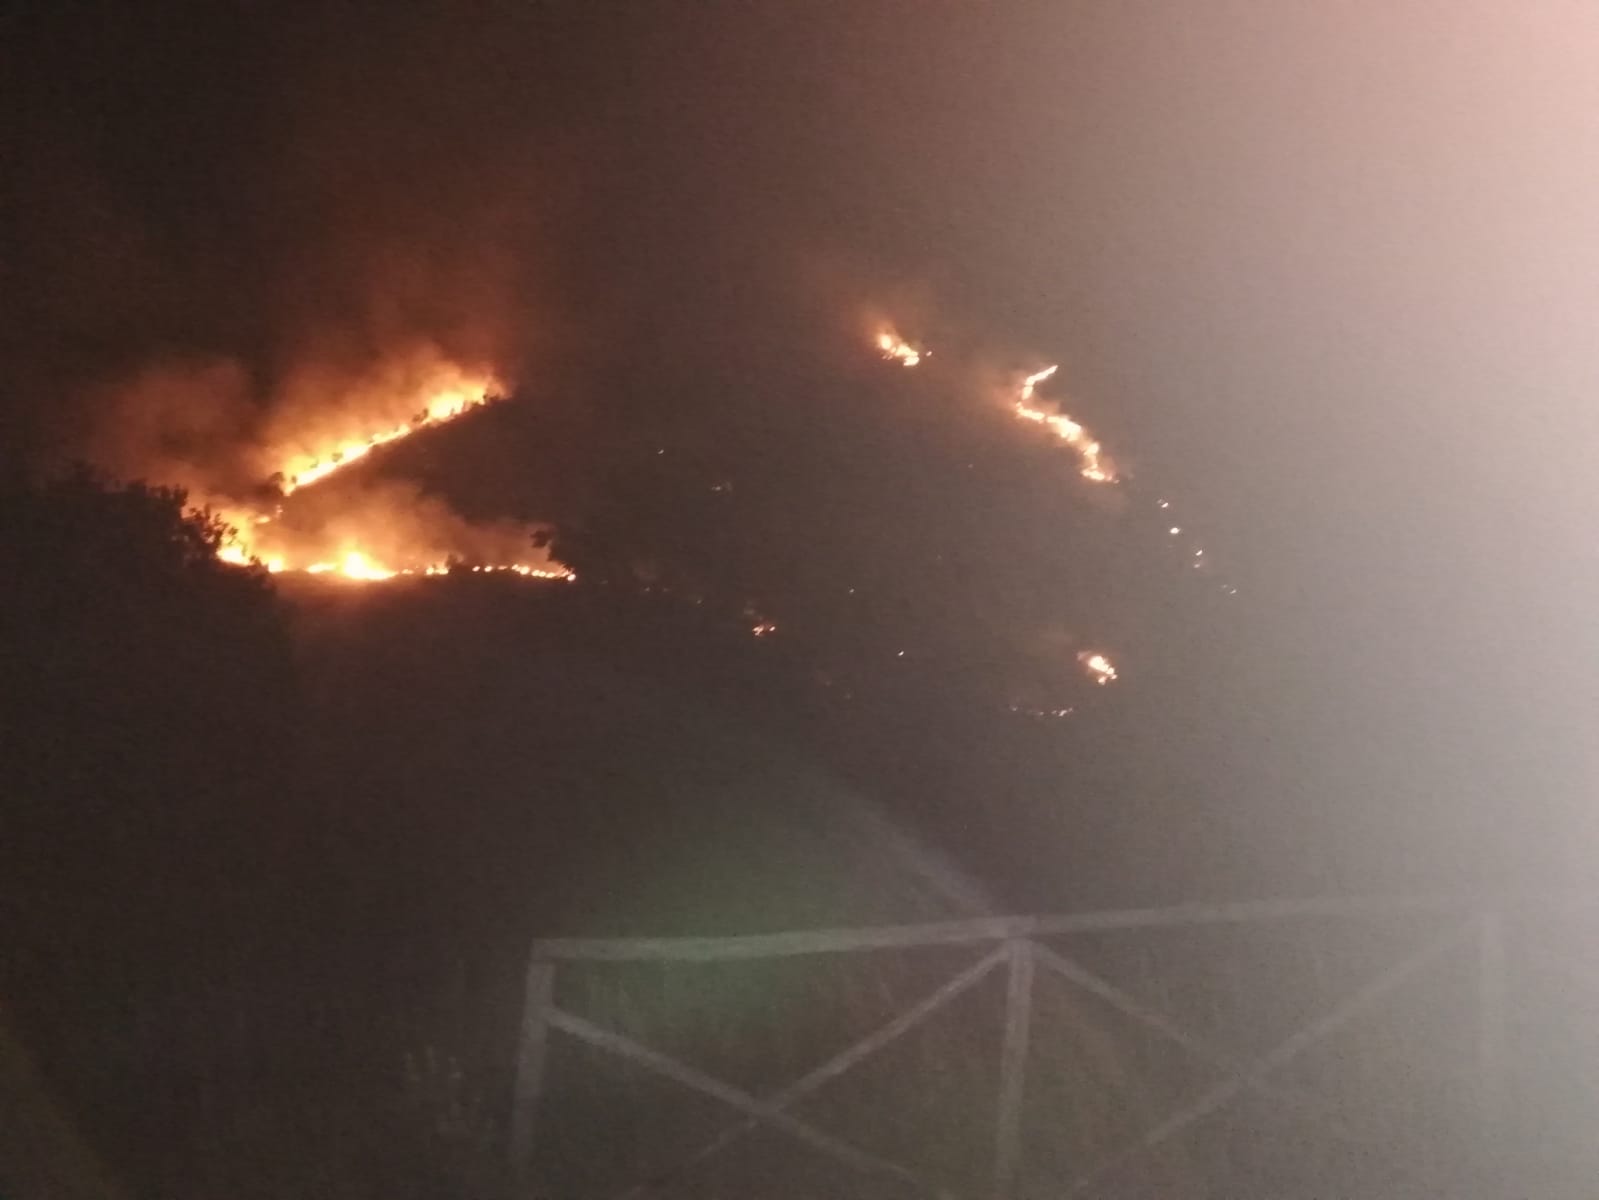 Quindici| Incendio sulla collina di San Teodoro, le fiamme minacciano il Santuario